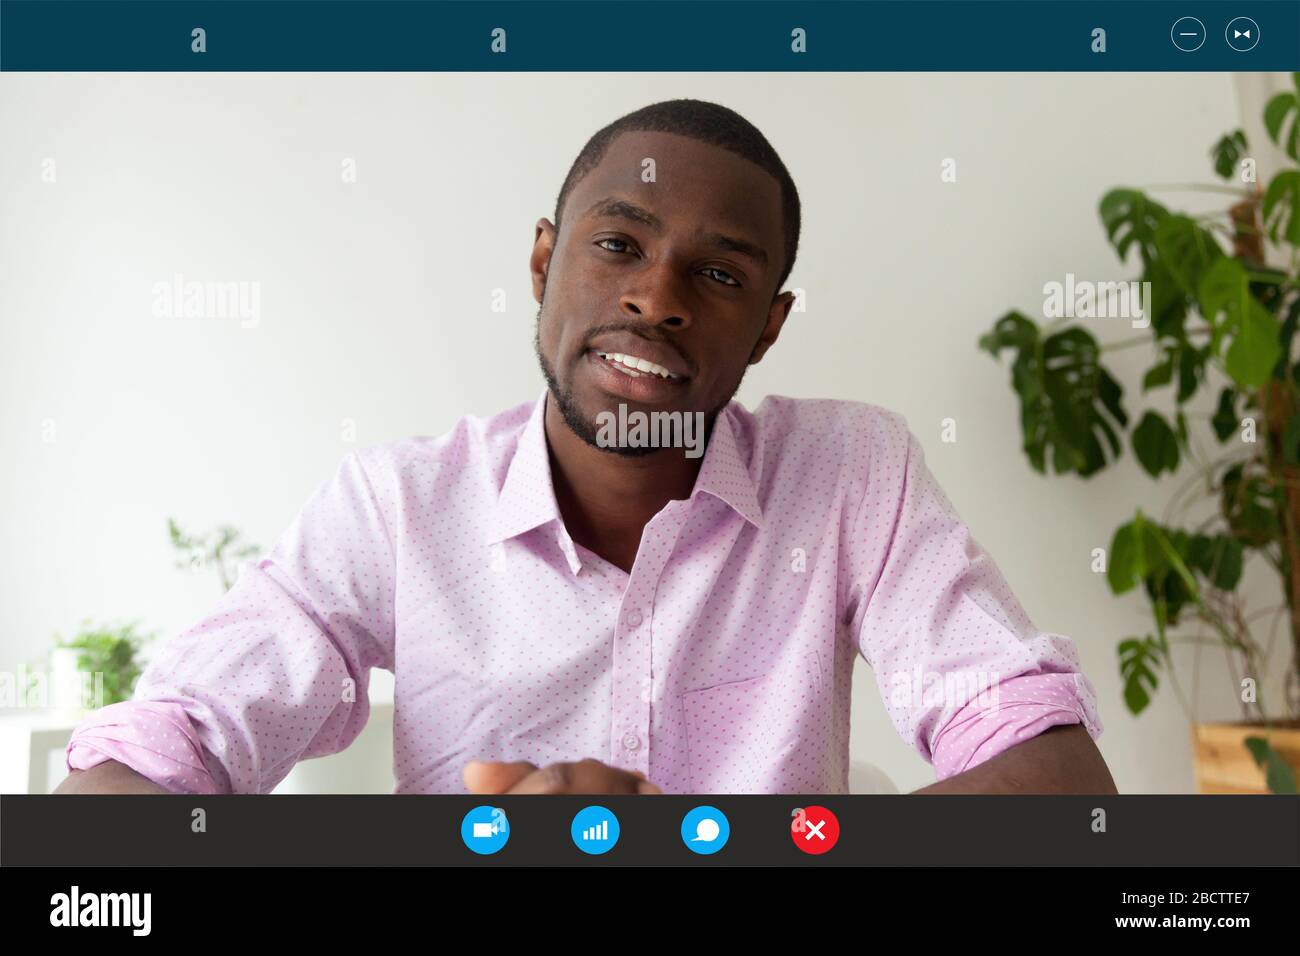 Computer Webcam zeigen Sie an, dass die afrikanische Bewerberin das Bewerbungsgespräch per Videokonferenz führt Stockfoto